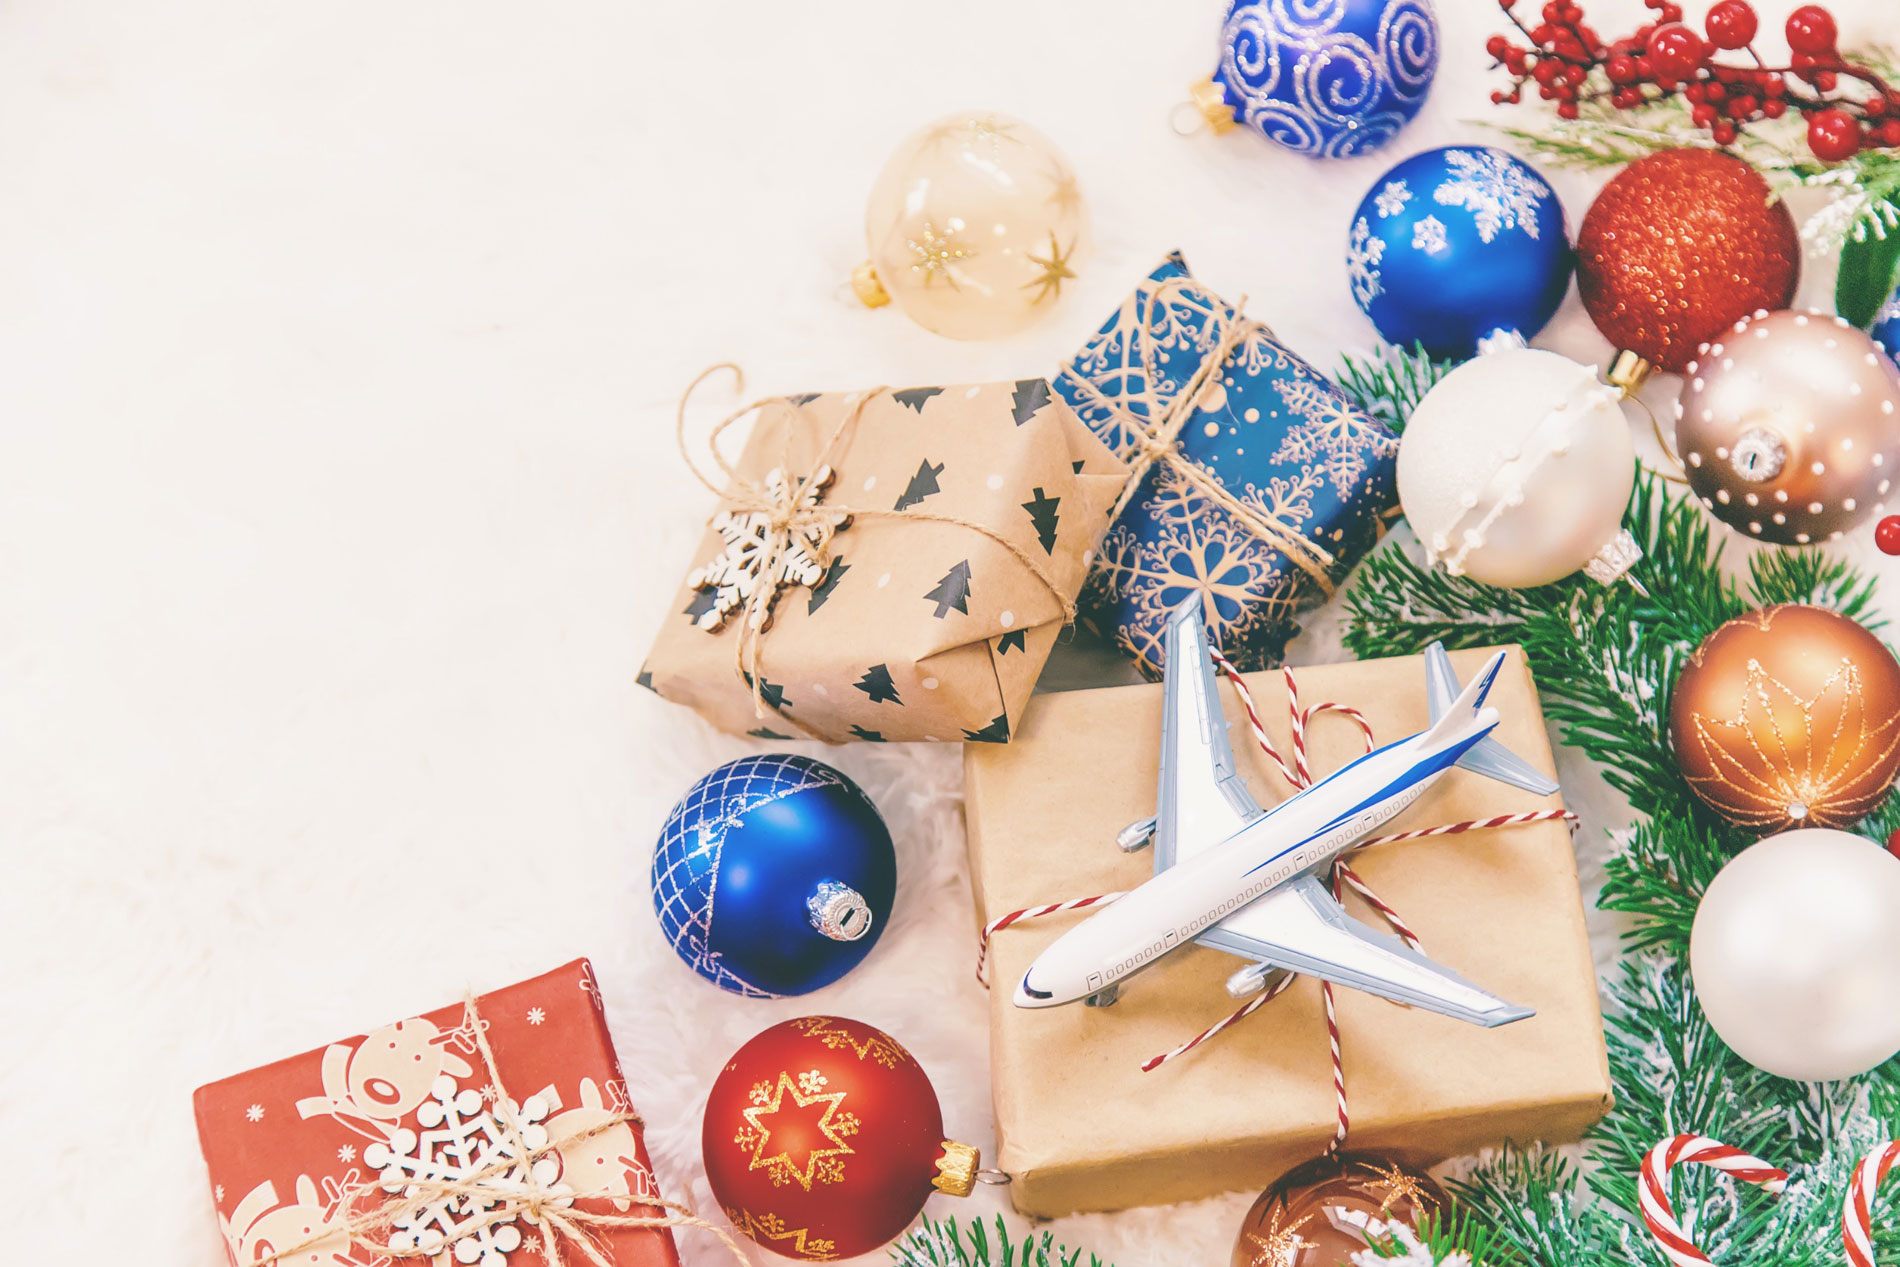 Χριστουγεννιάτικα δώρα για όσους αγαπούν τα ταξιδια © 123rf